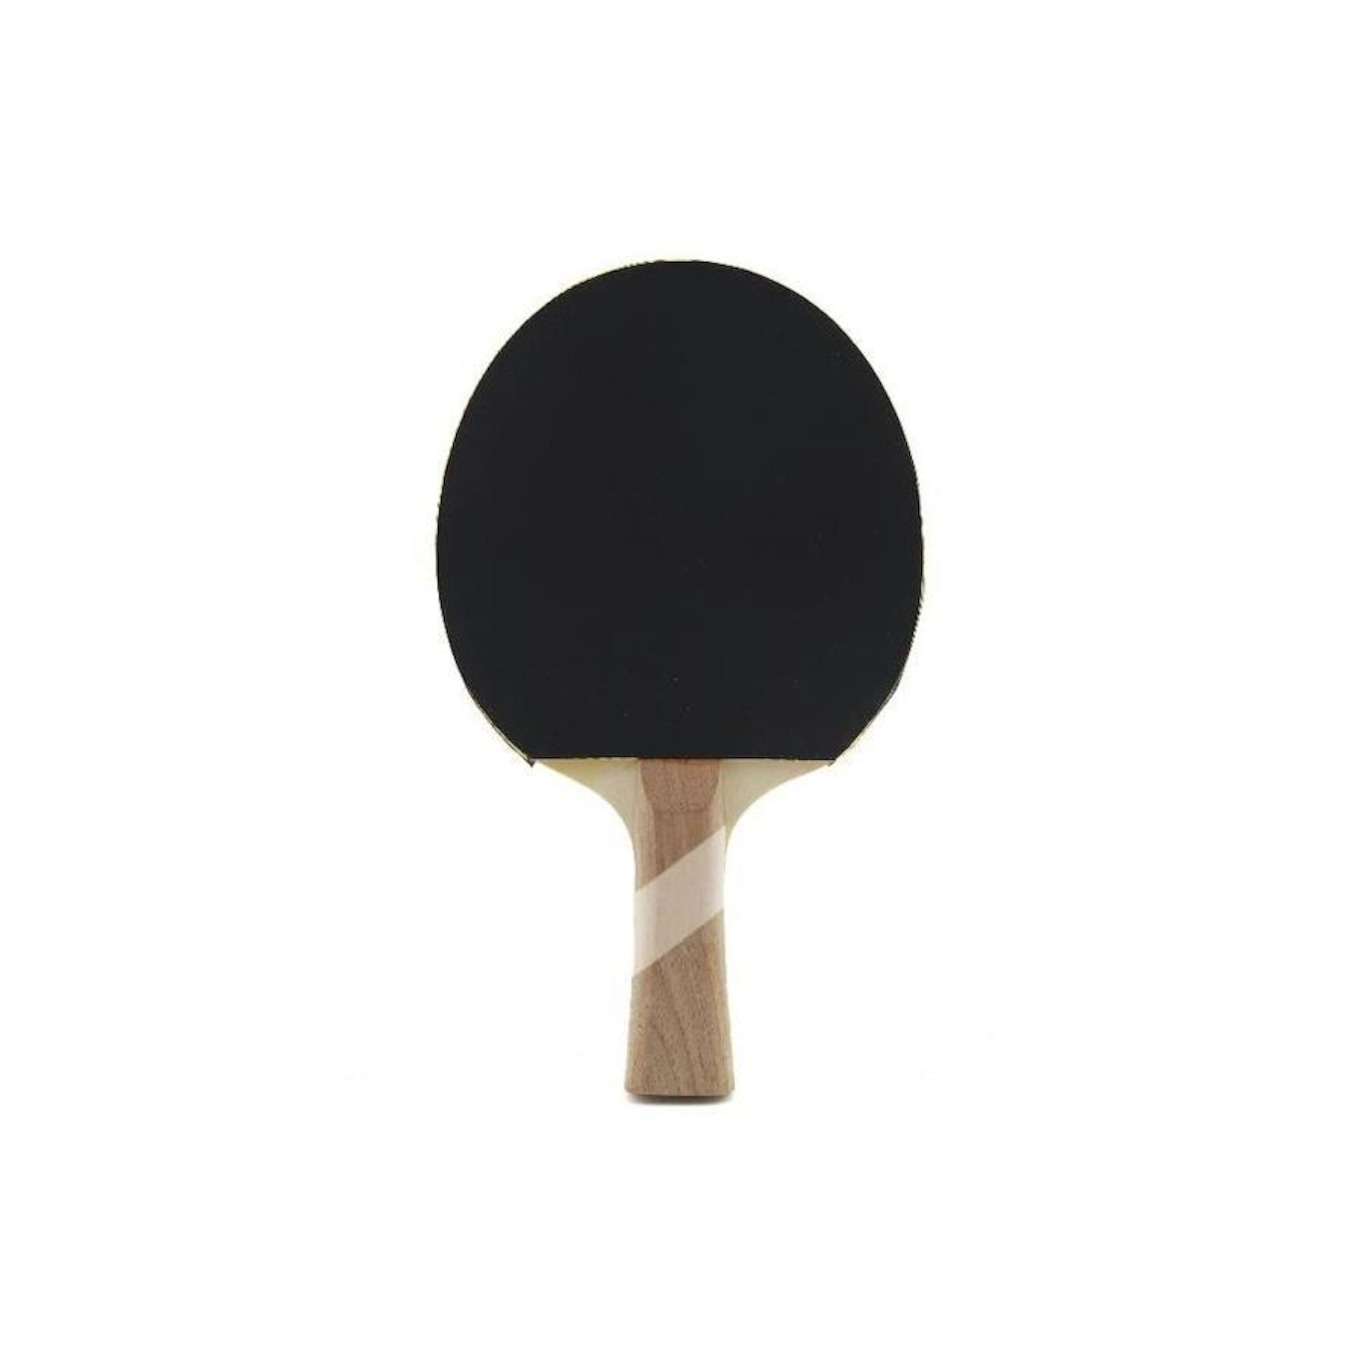 Mesa de ping pong speedo são boas? –